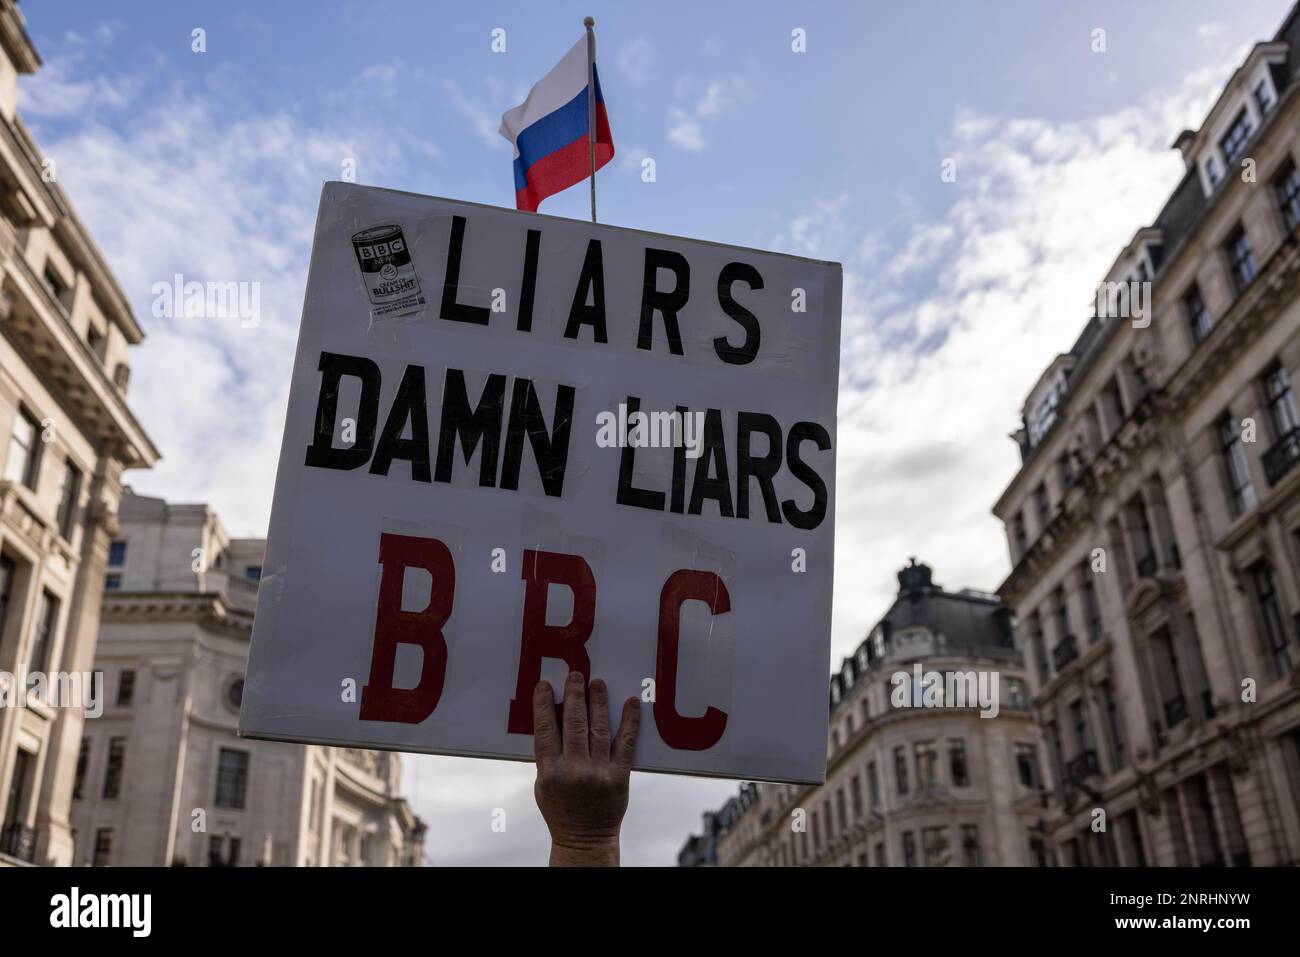 Plakat für die BBC (British Broadcasting Corporation) im Besitz der British Government Liars, Central London, England, Vereinigtes Königreich Stockfoto